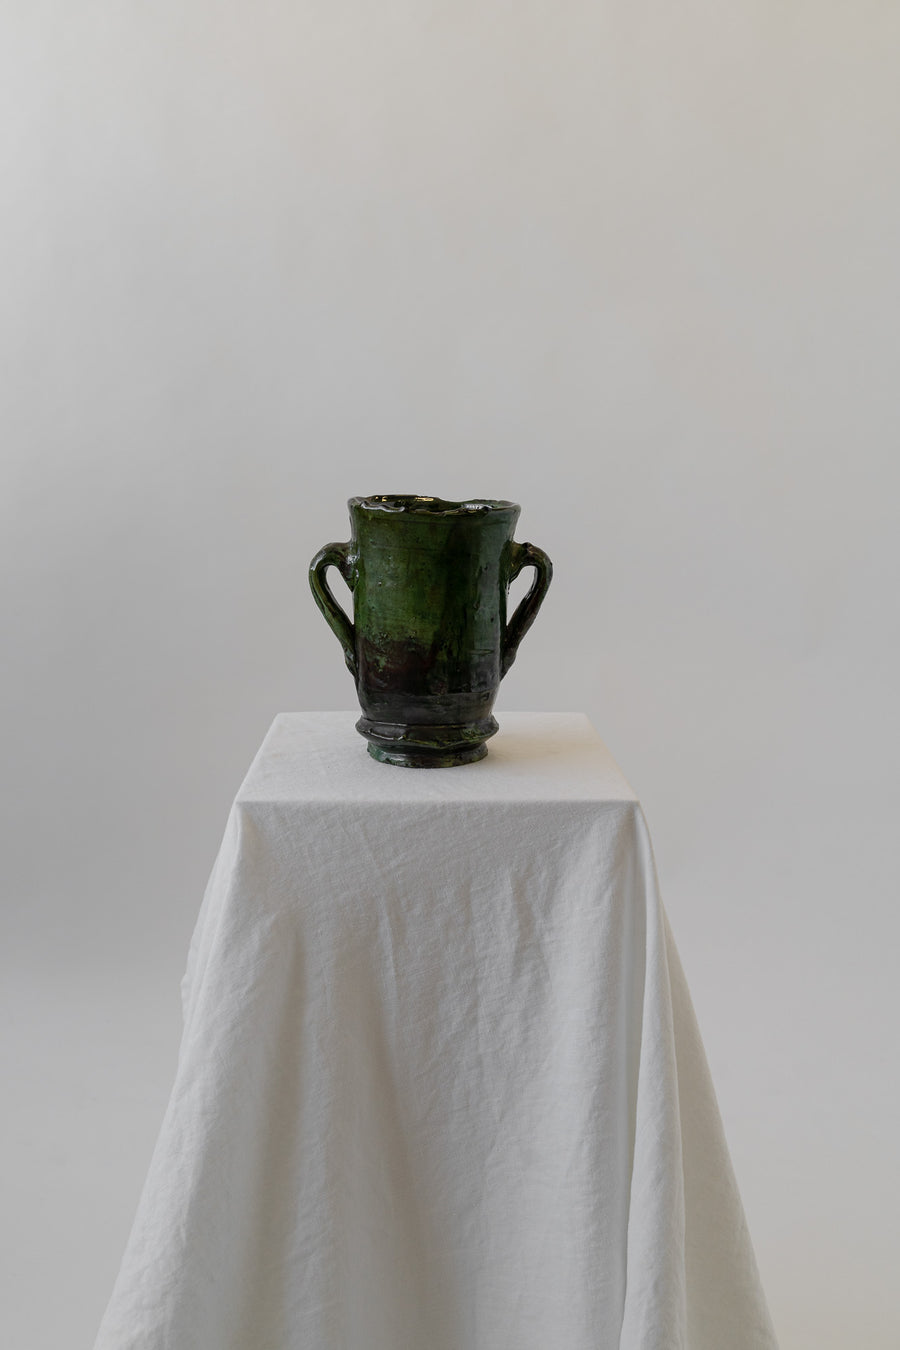 Small Glazed Green Vase